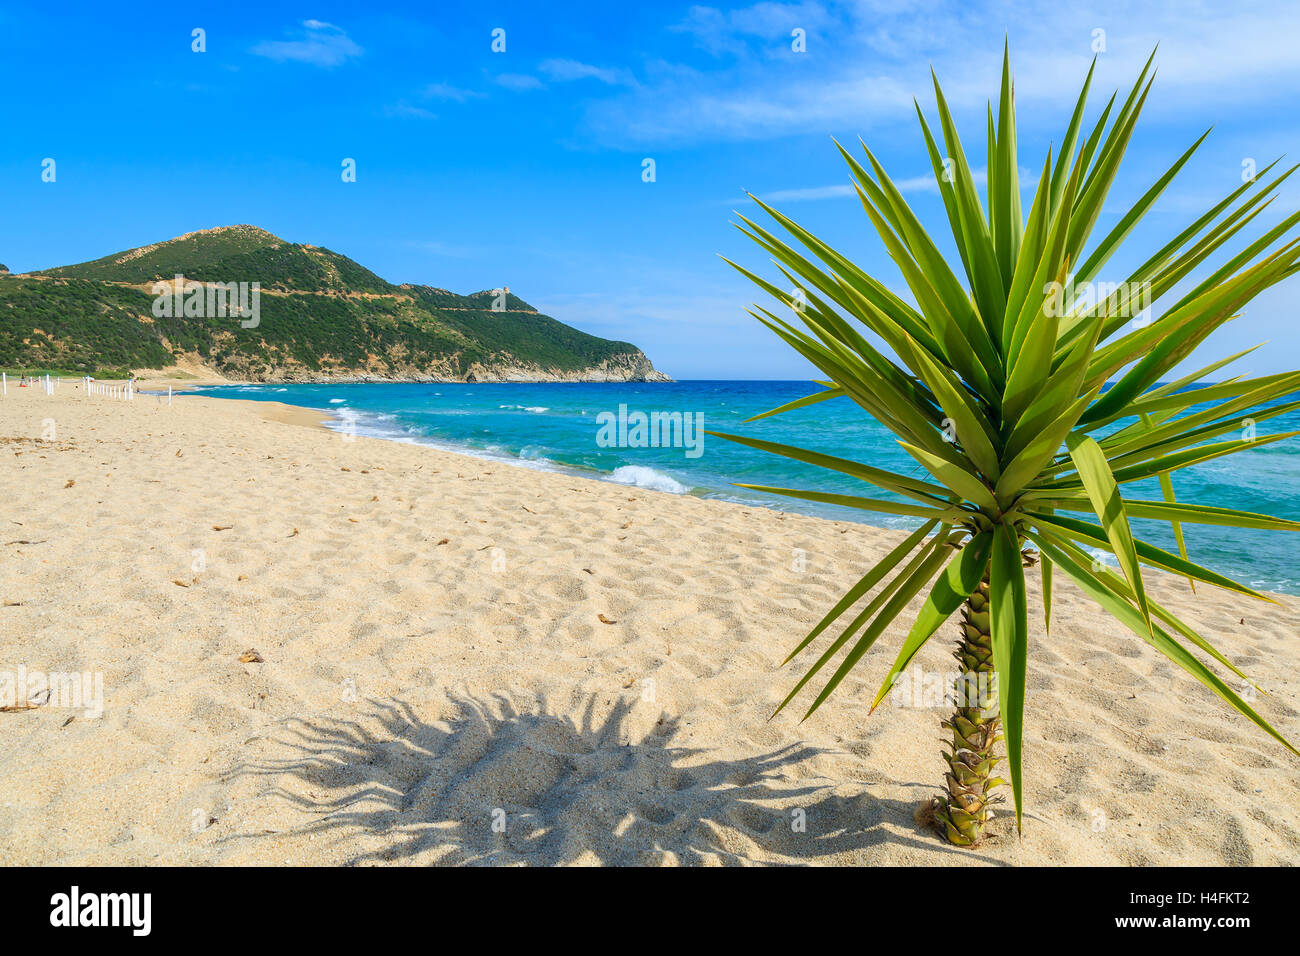 Piccolo verde Palm tree sulla sabbia e la vista del mare blu, Capo Boi spiaggia, l'isola di Sardegna, Italia Foto Stock